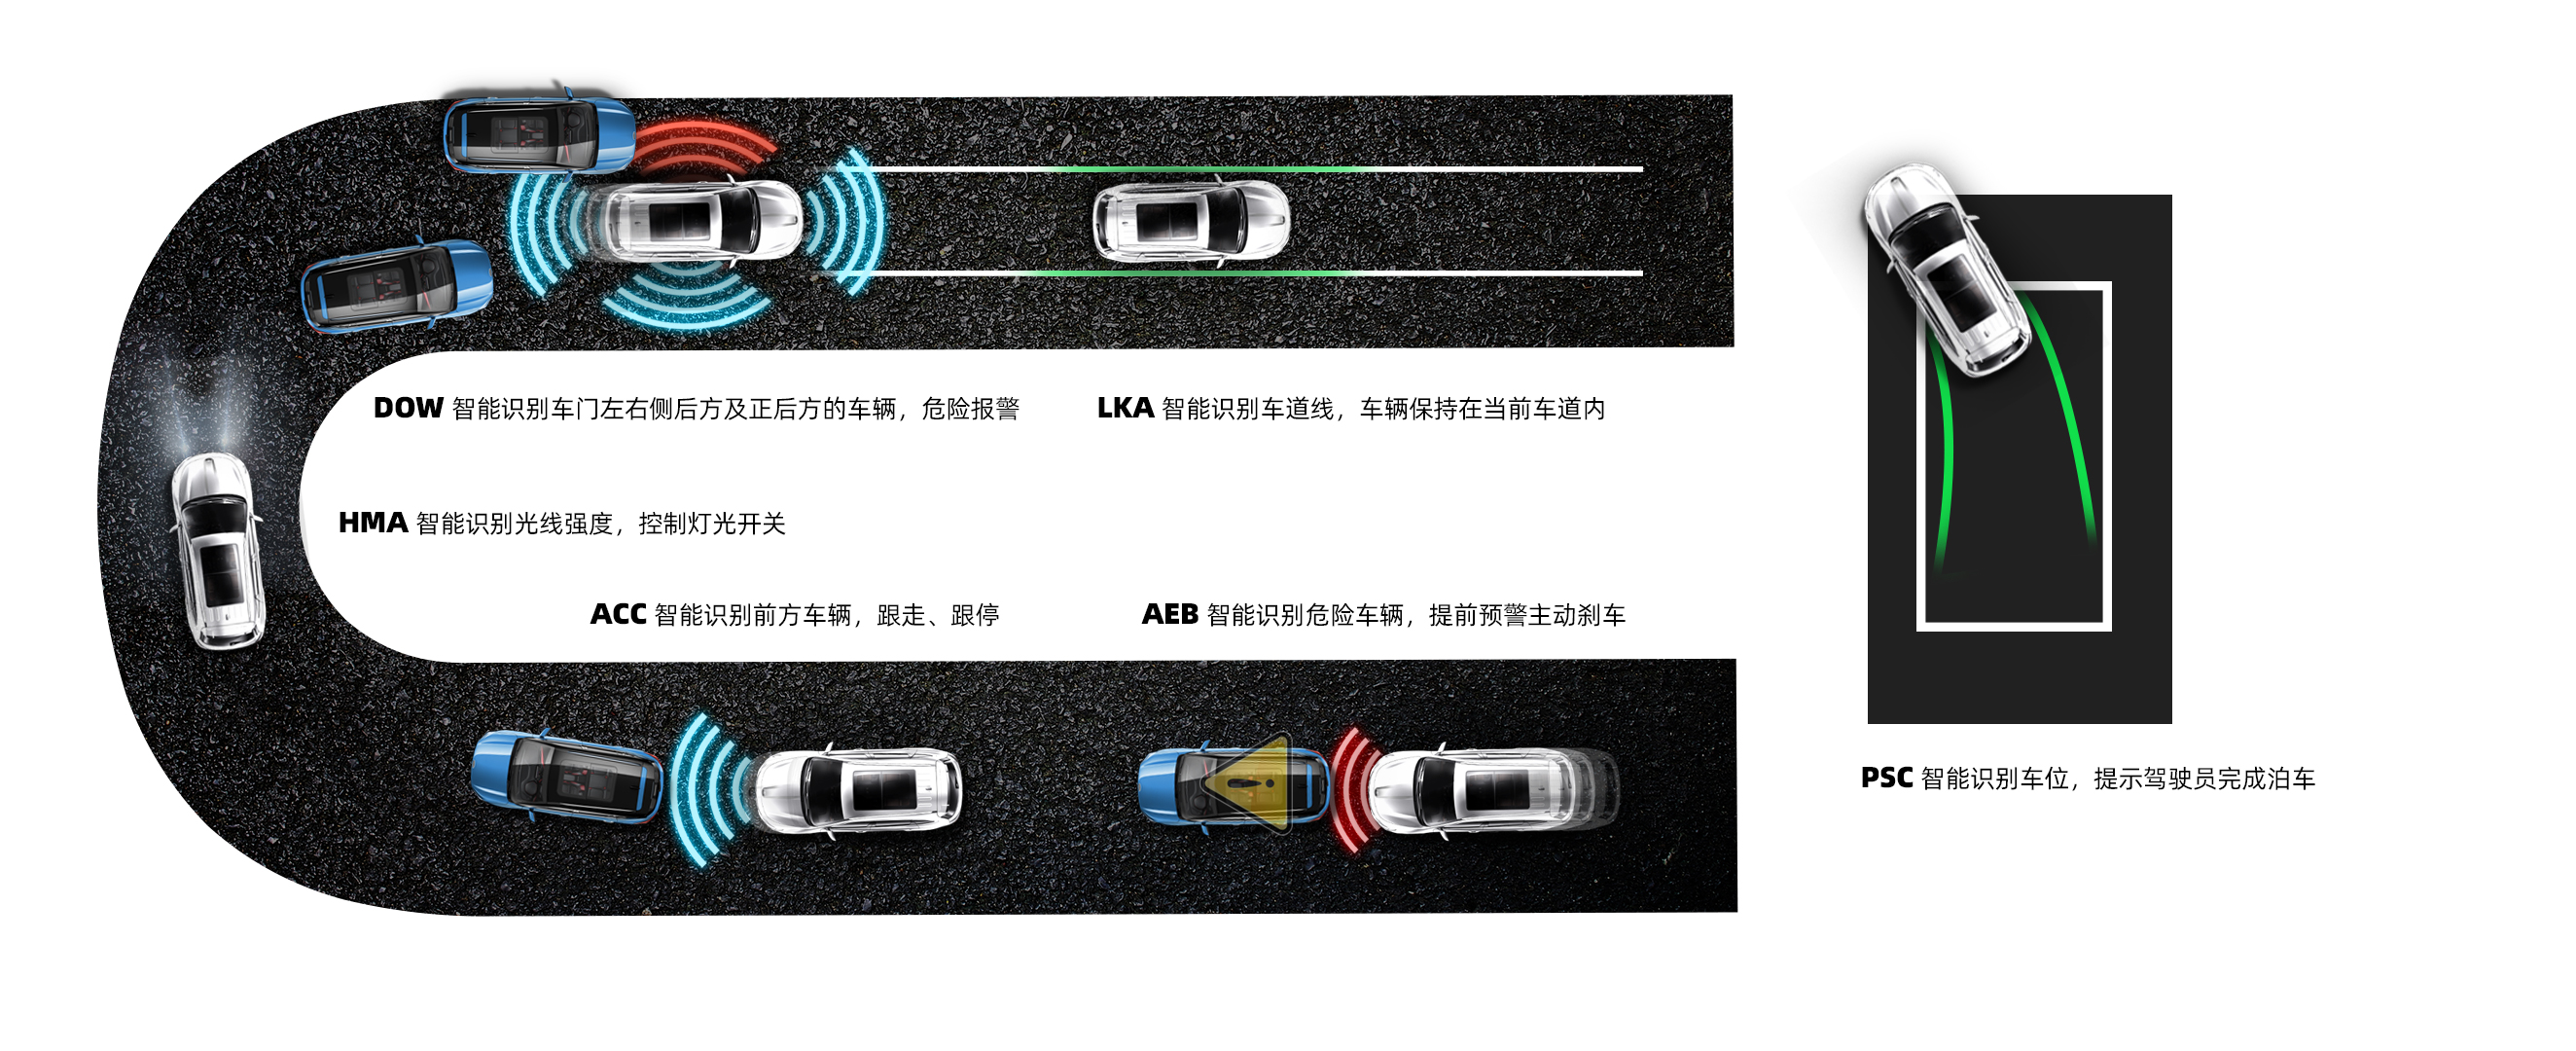 思皓乘用车品牌发布 首款大六座SUV思皓X8济南上市